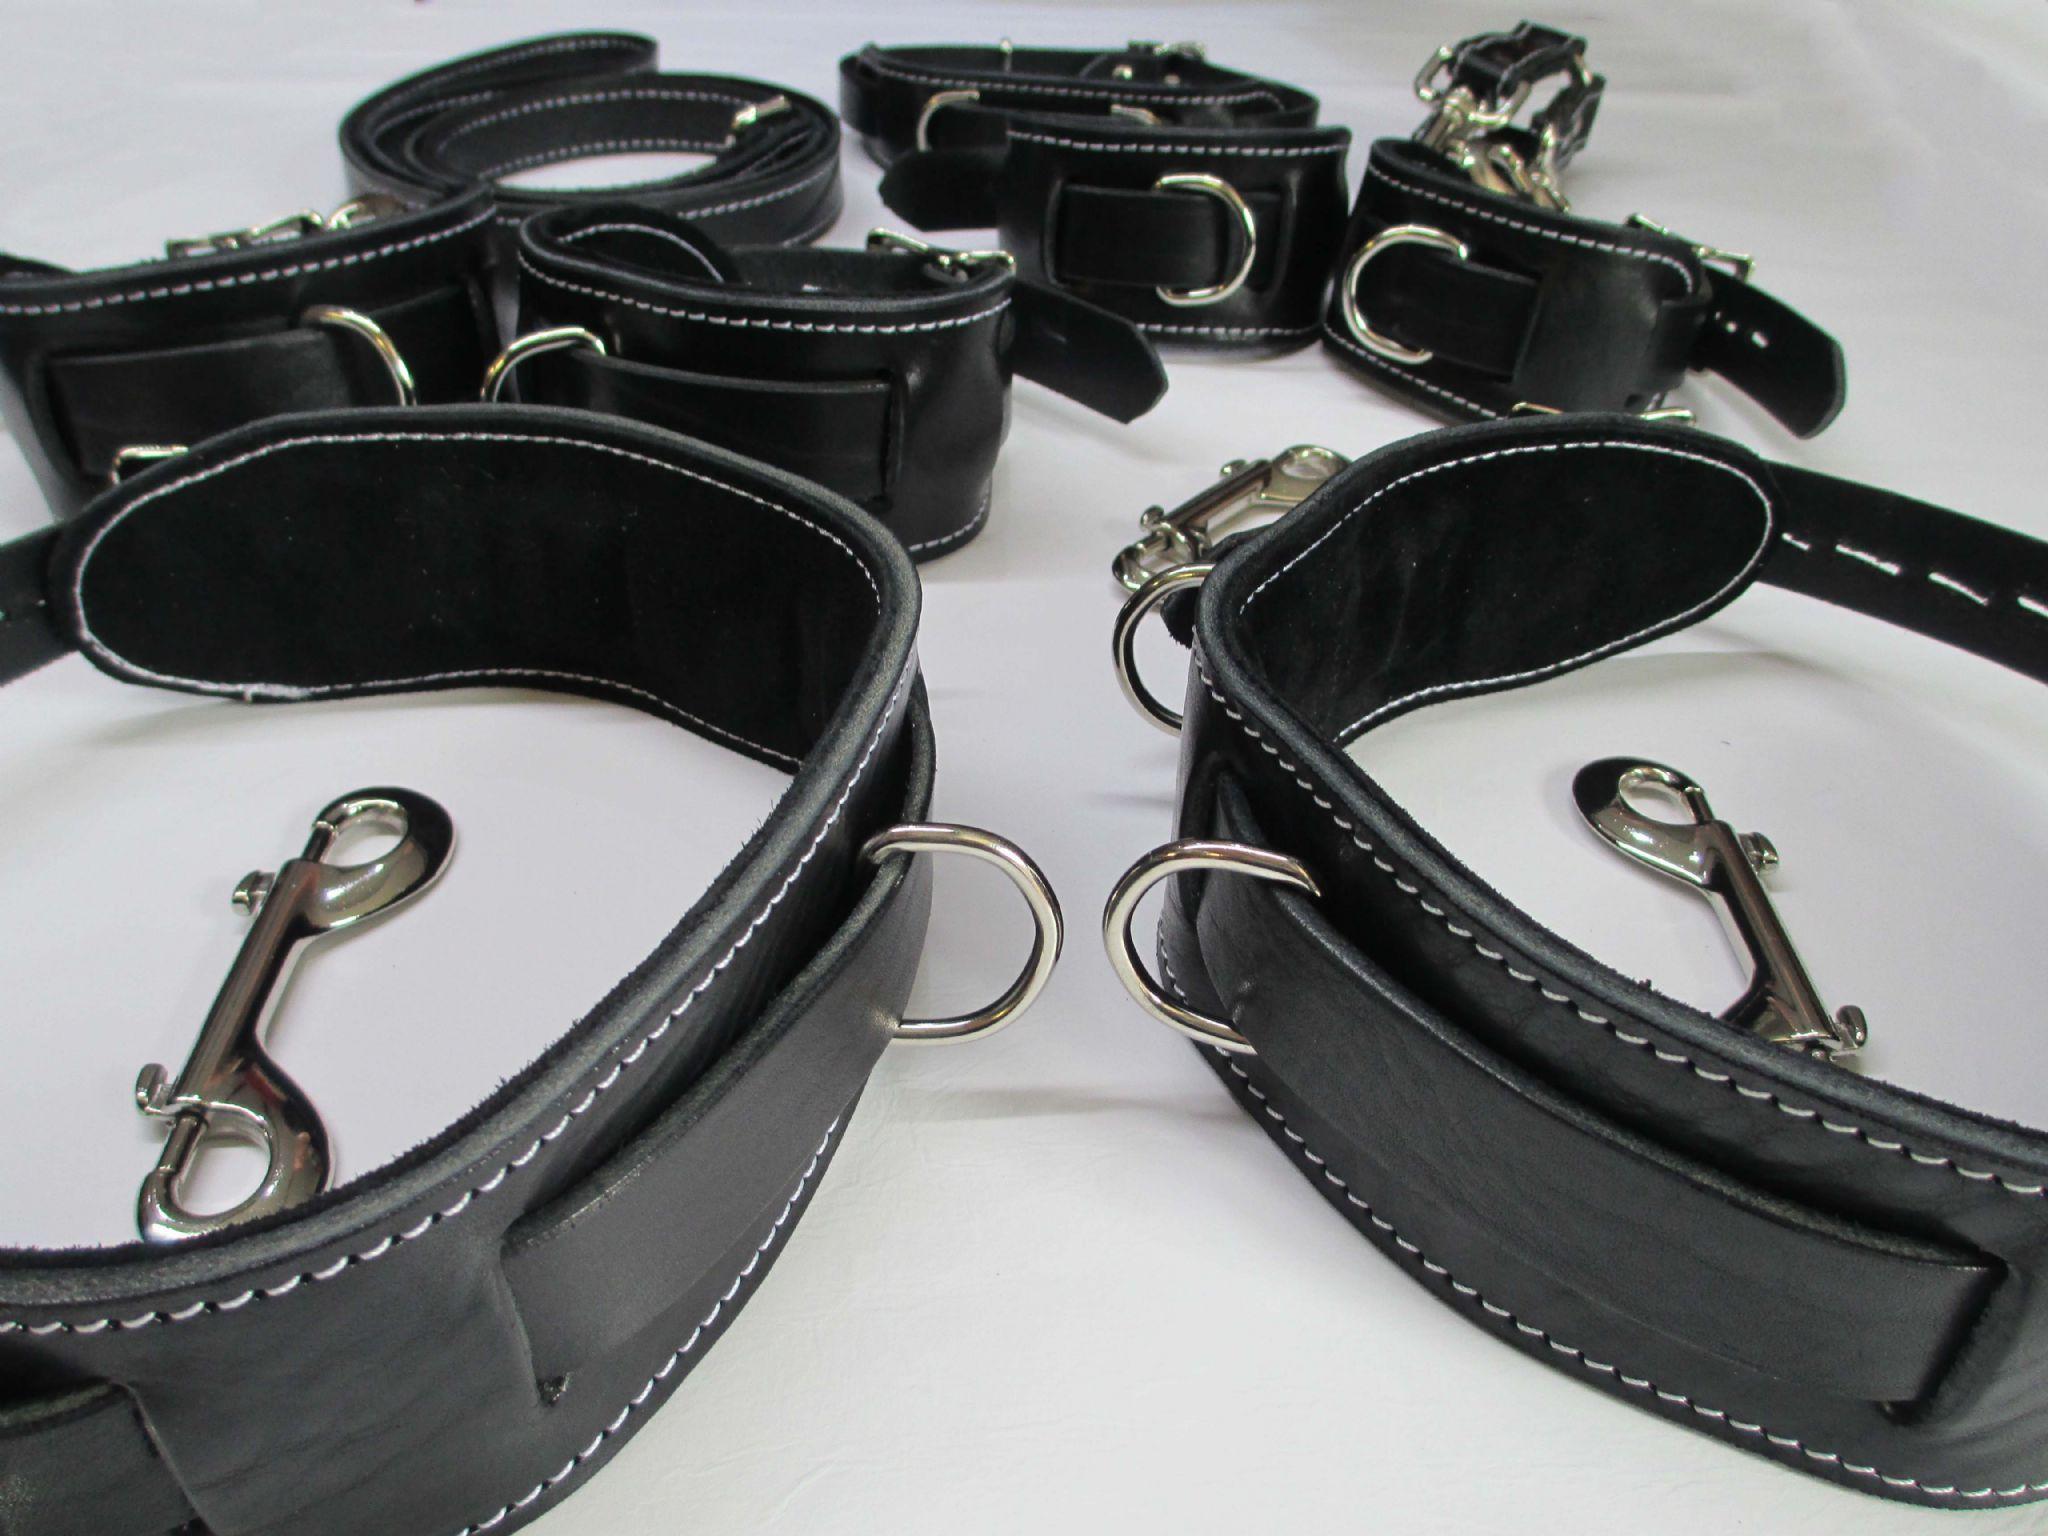 Leather bondage ware